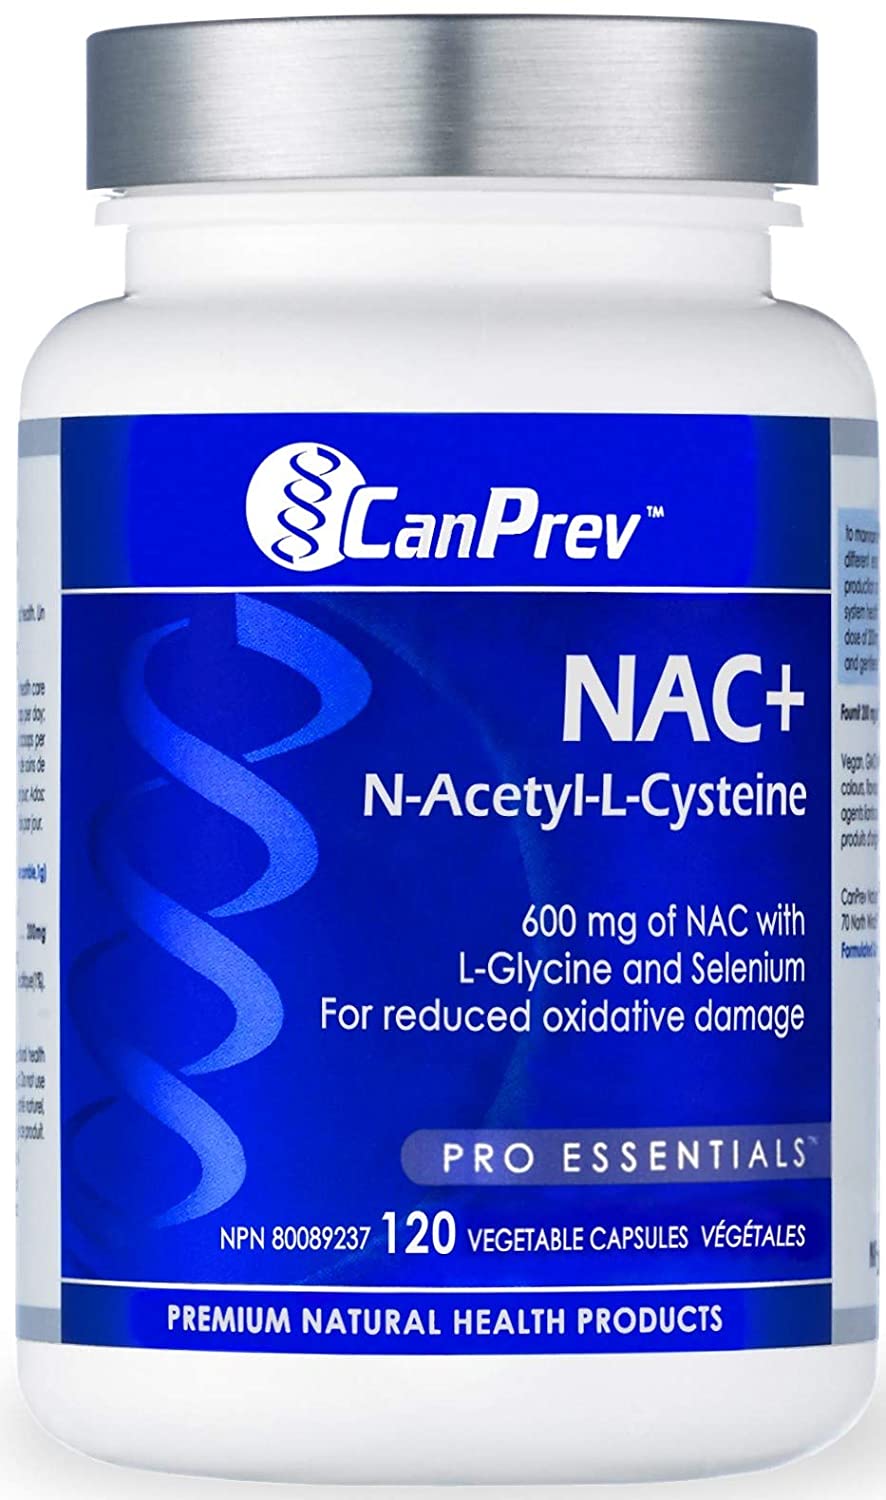 CanPrev NAC+ N Acetyl L Cysteine 20 v caps